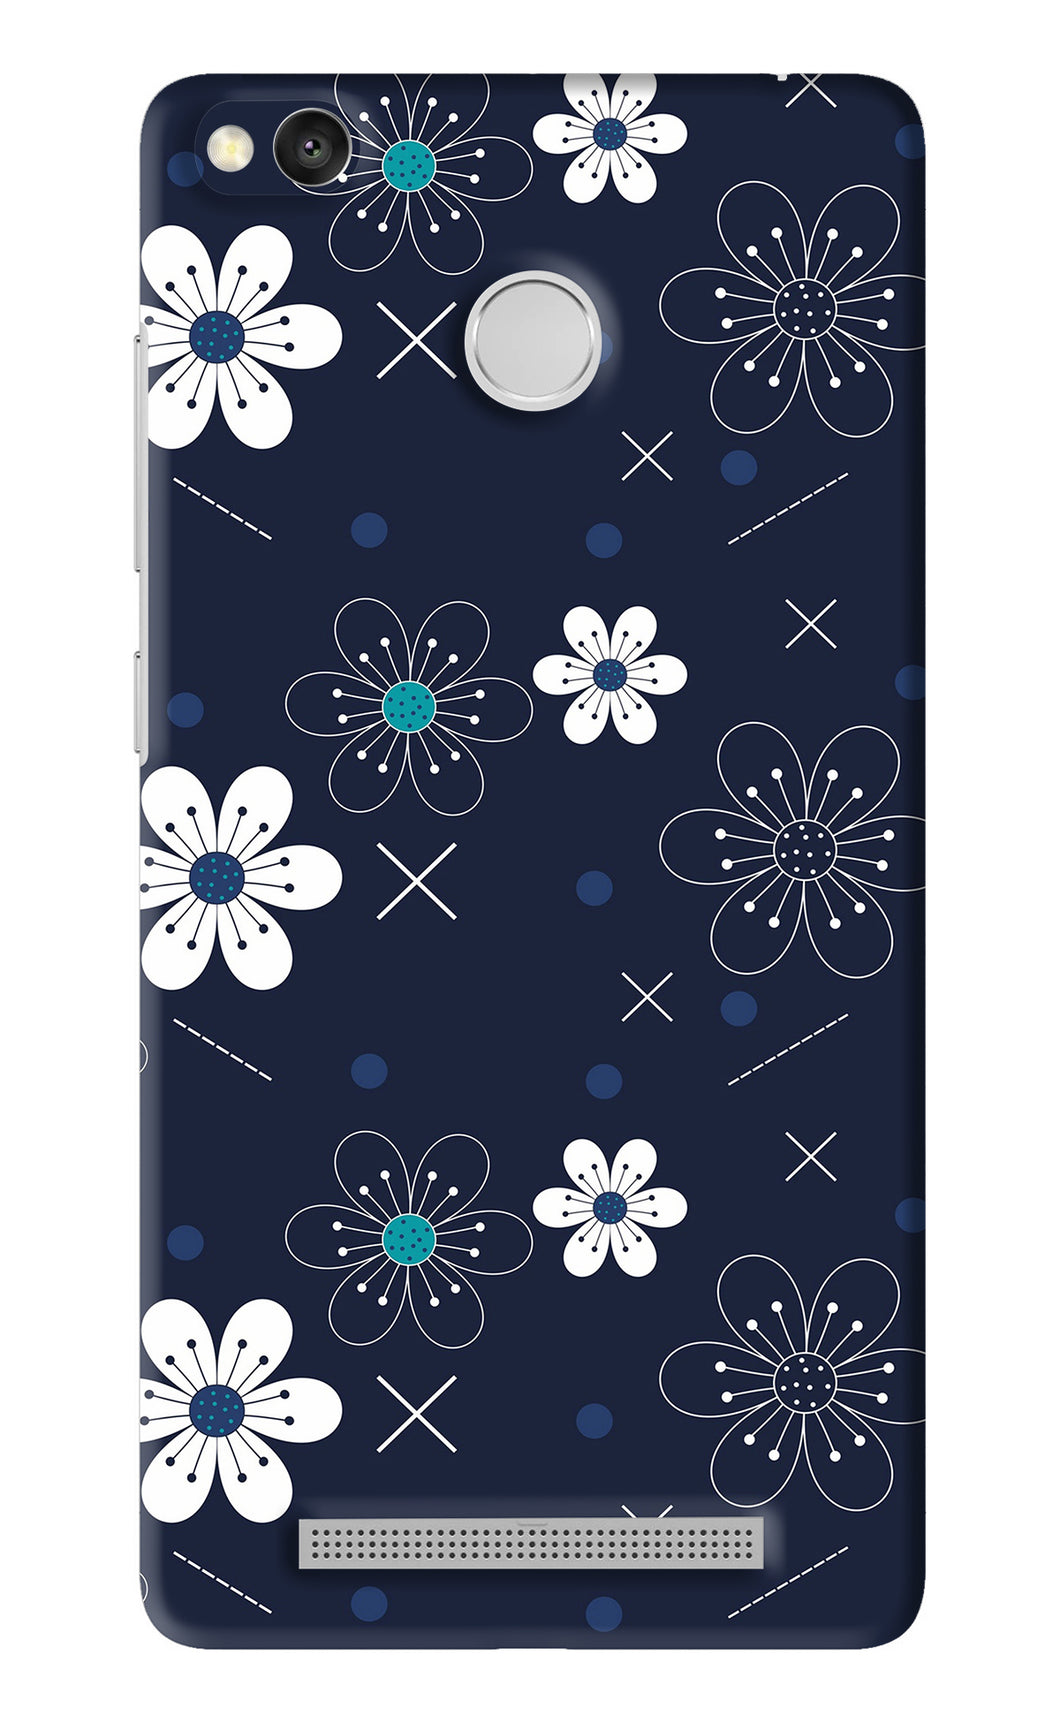 Flowers 4 Xiaomi Redmi 3S Prime Back Skin Wrap